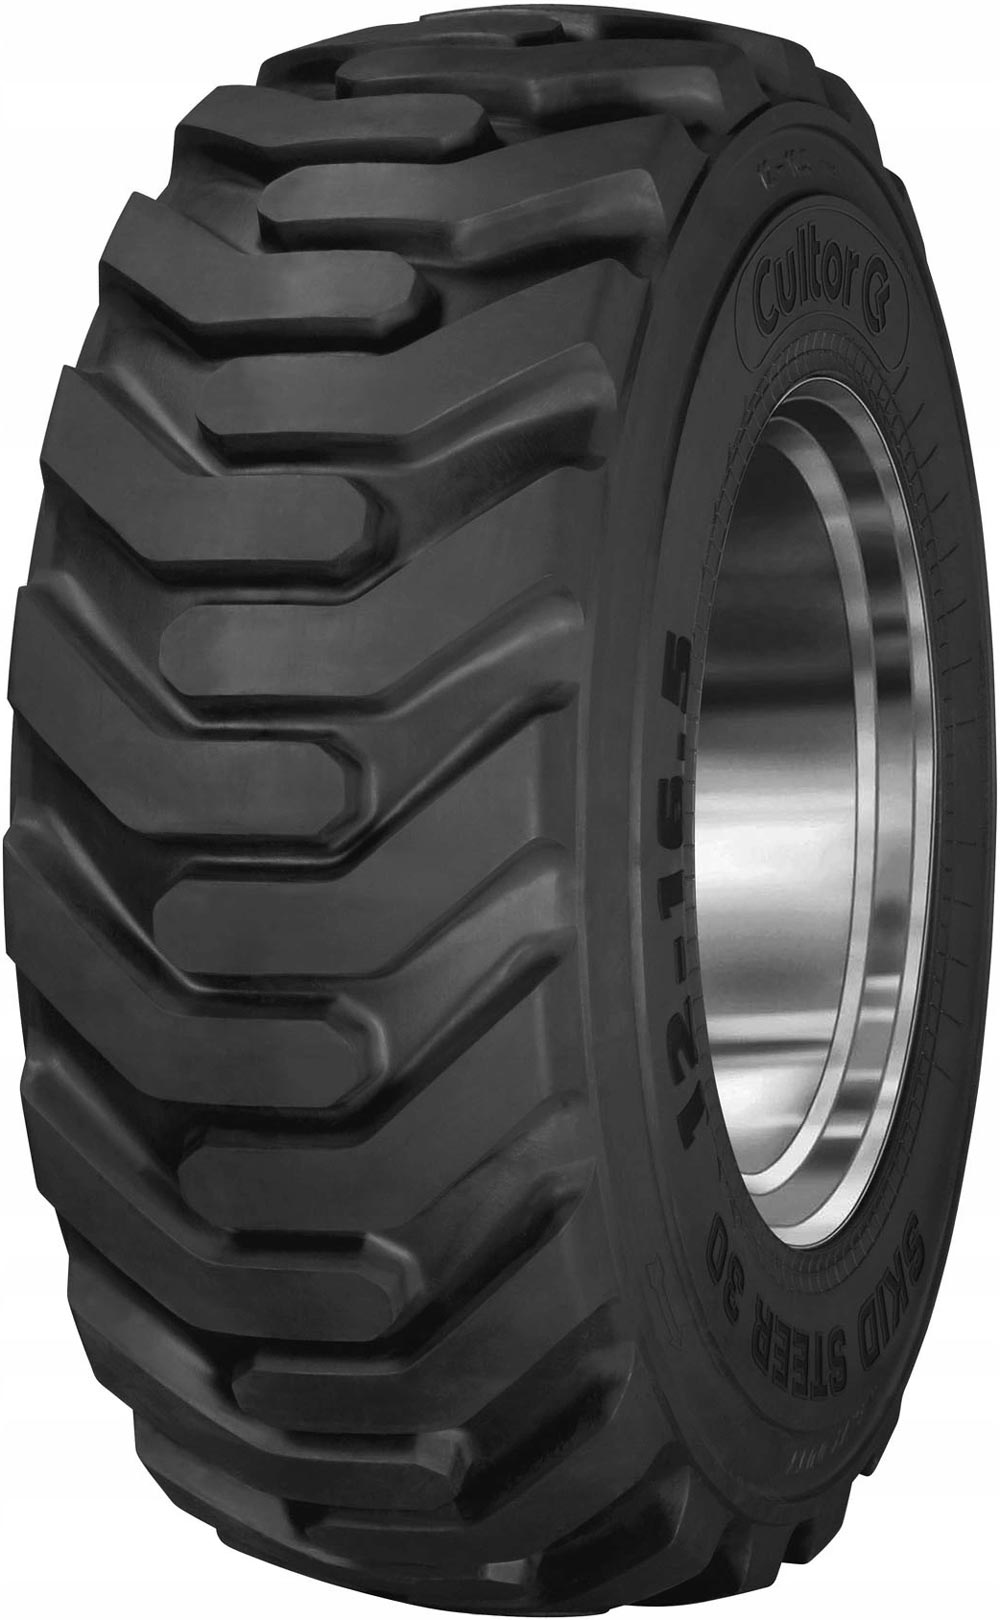 product_type-industrial_tires CULTOR SKID STEER 30 14PR TL 12.5/80 R18 P